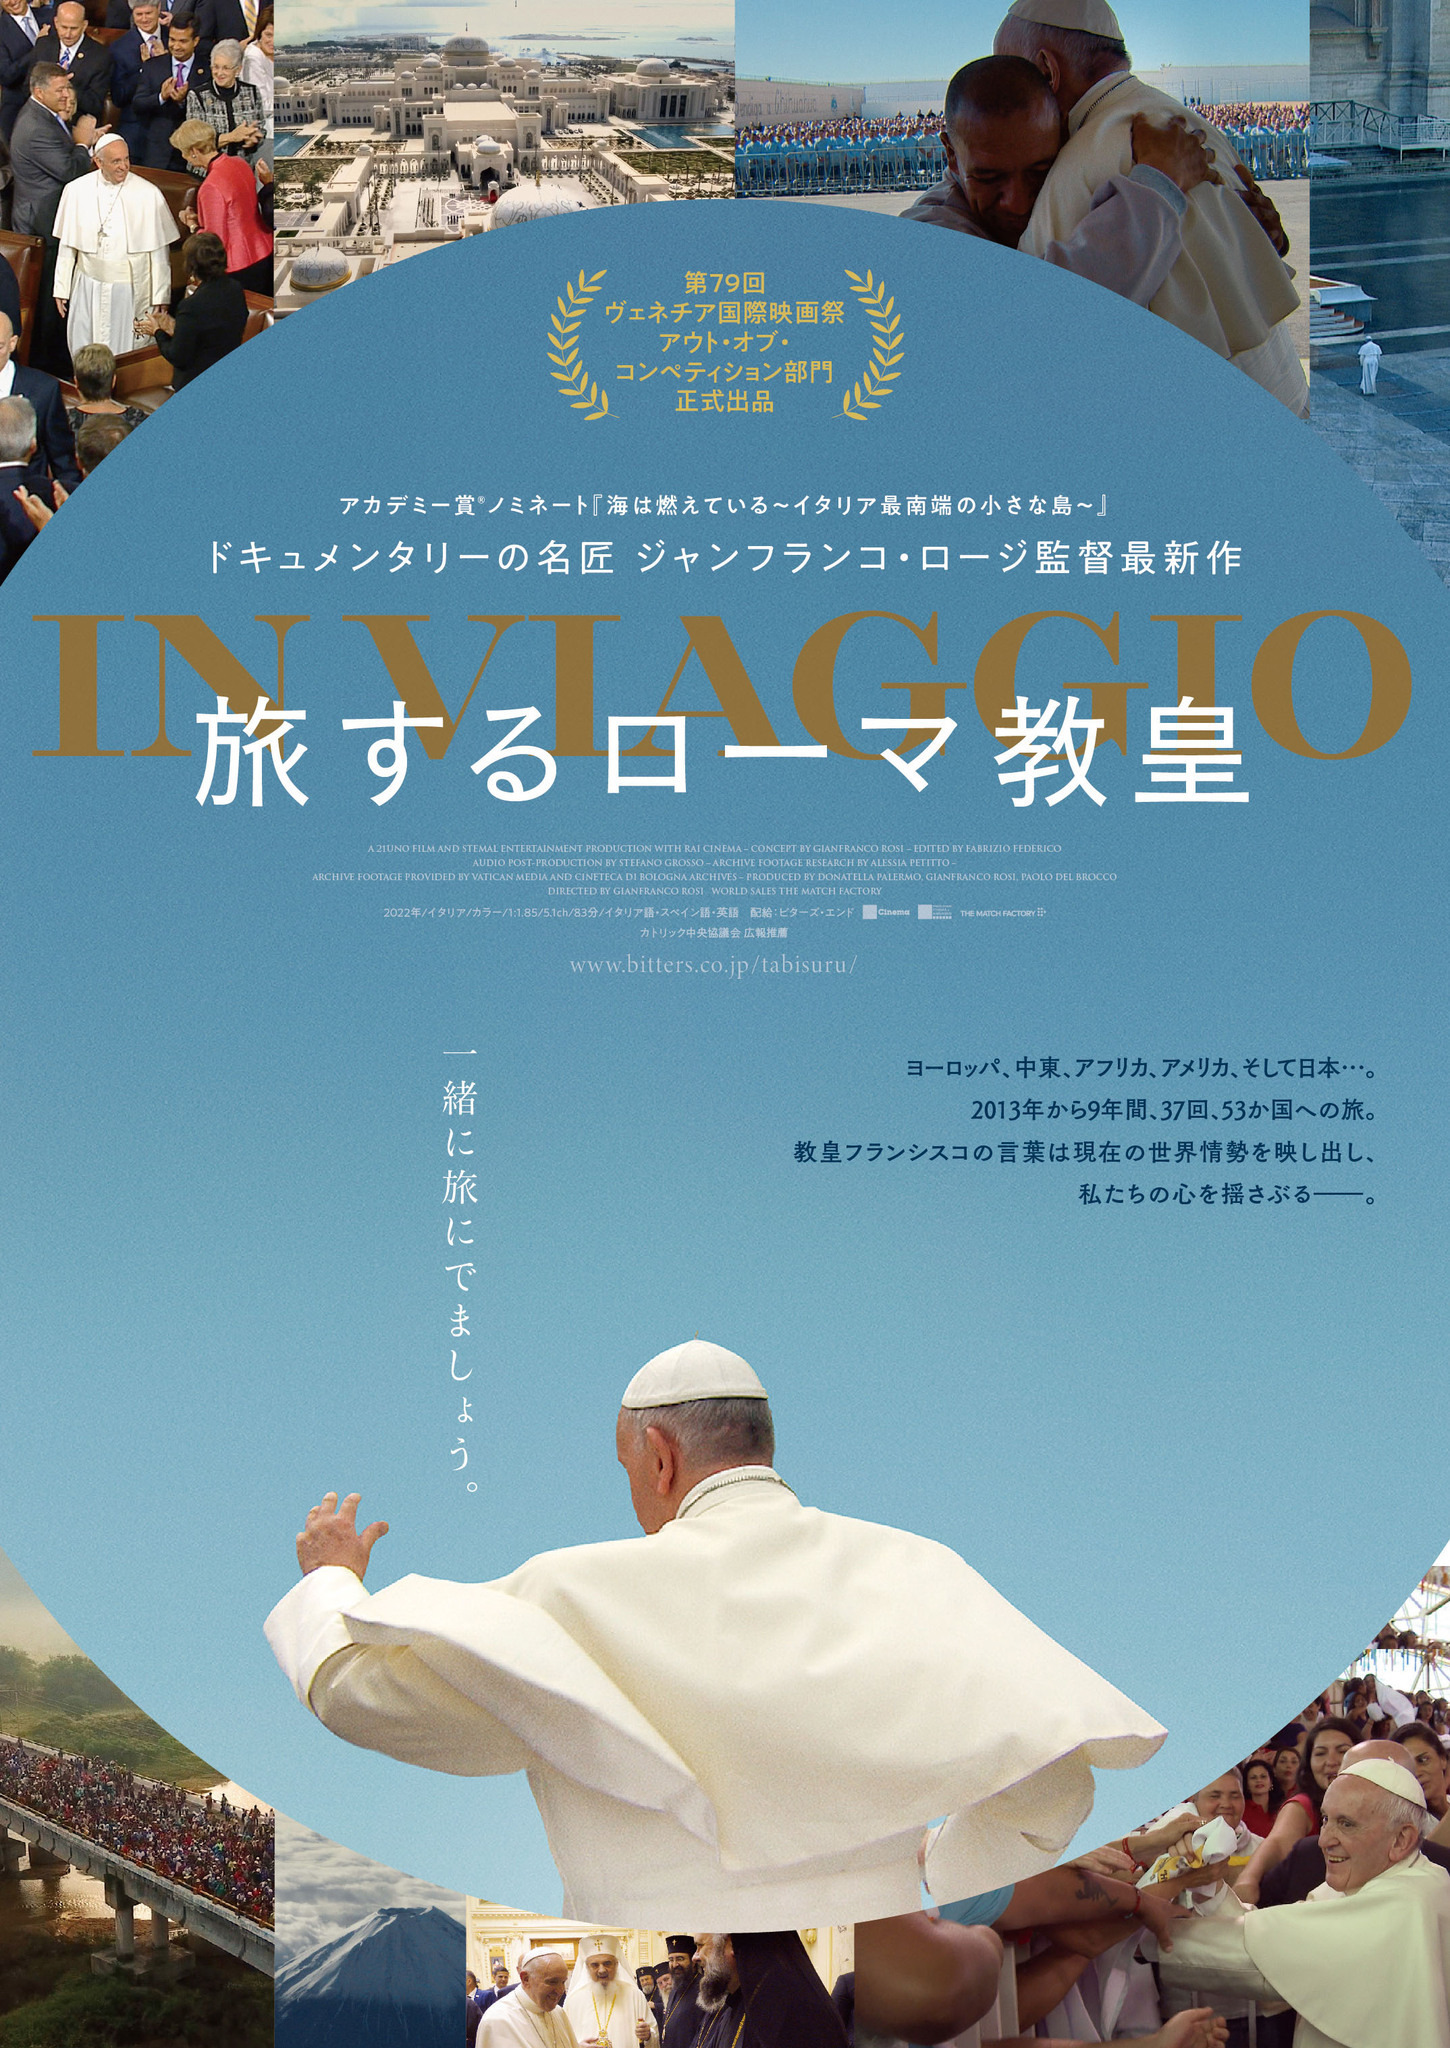 教皇フランシスコと世界各国の旅へ『旅するローマ教皇』本ビジュアル 公開は10月6日に | cinemacafe.net